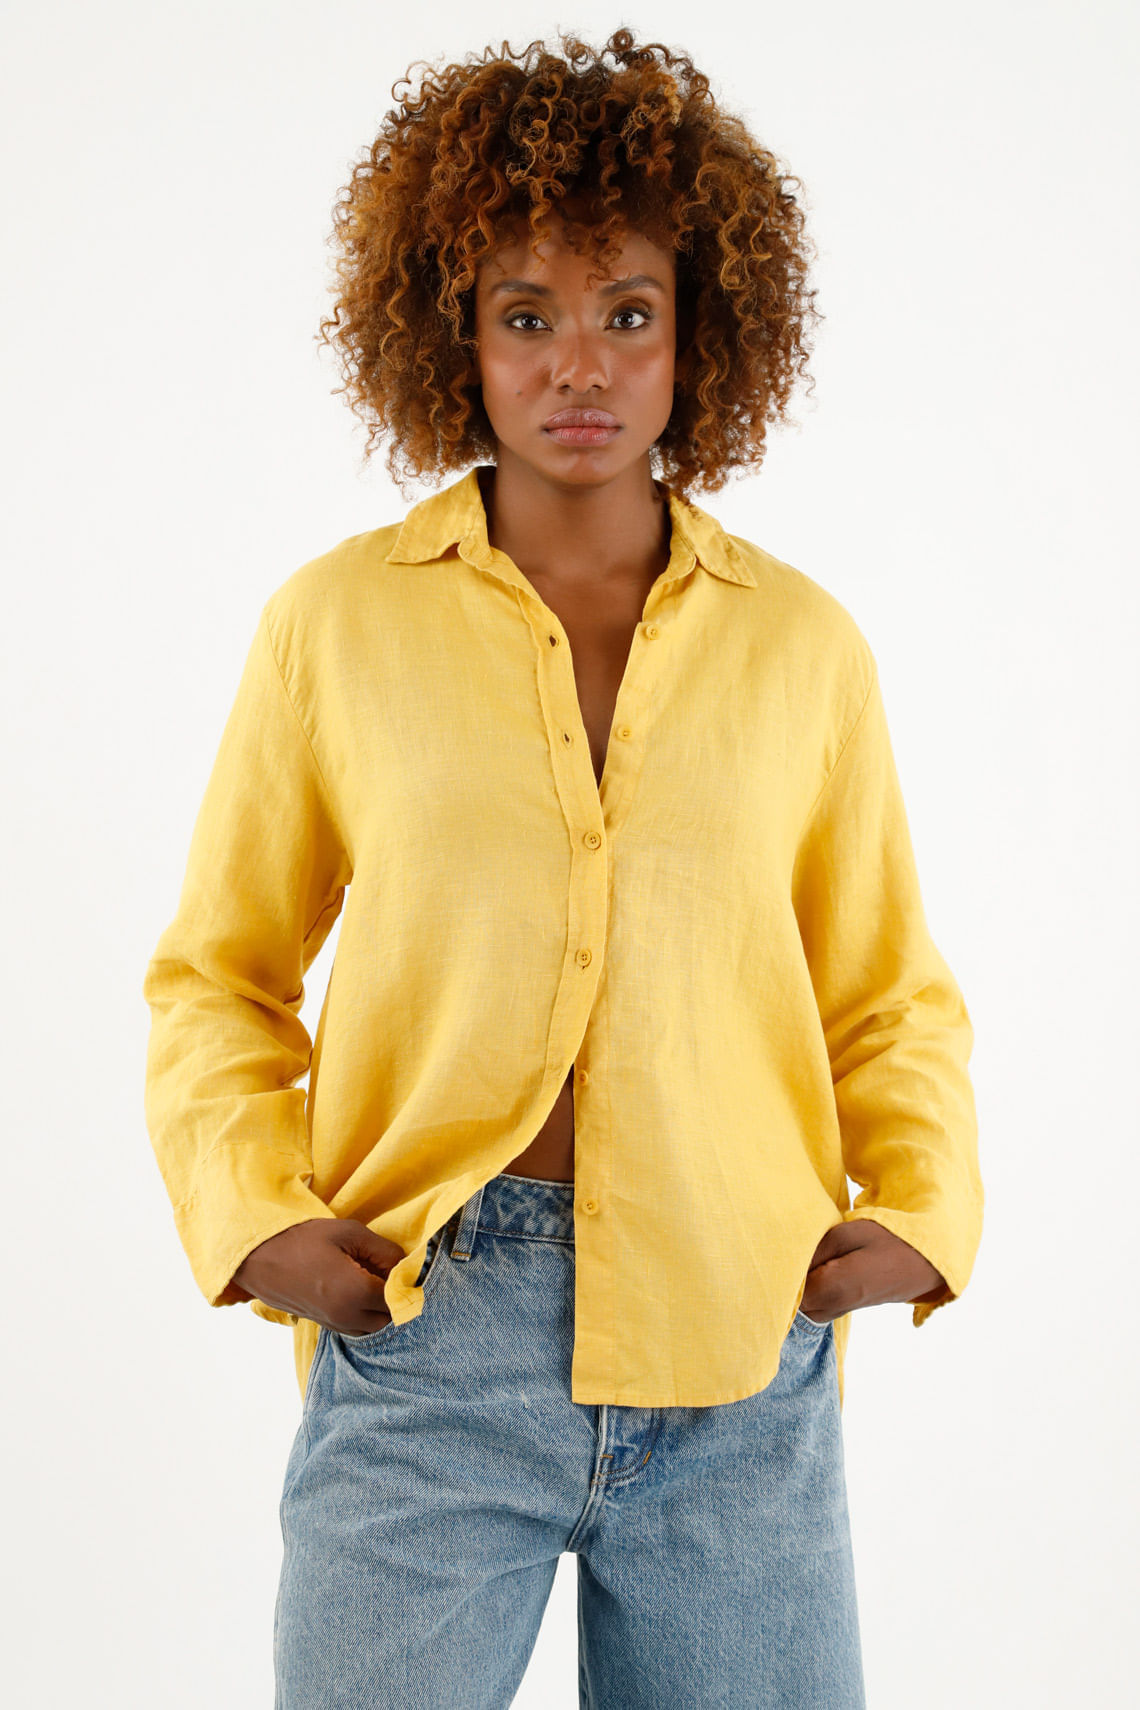 Camiseta amarilla de manga larga – Divela Moda